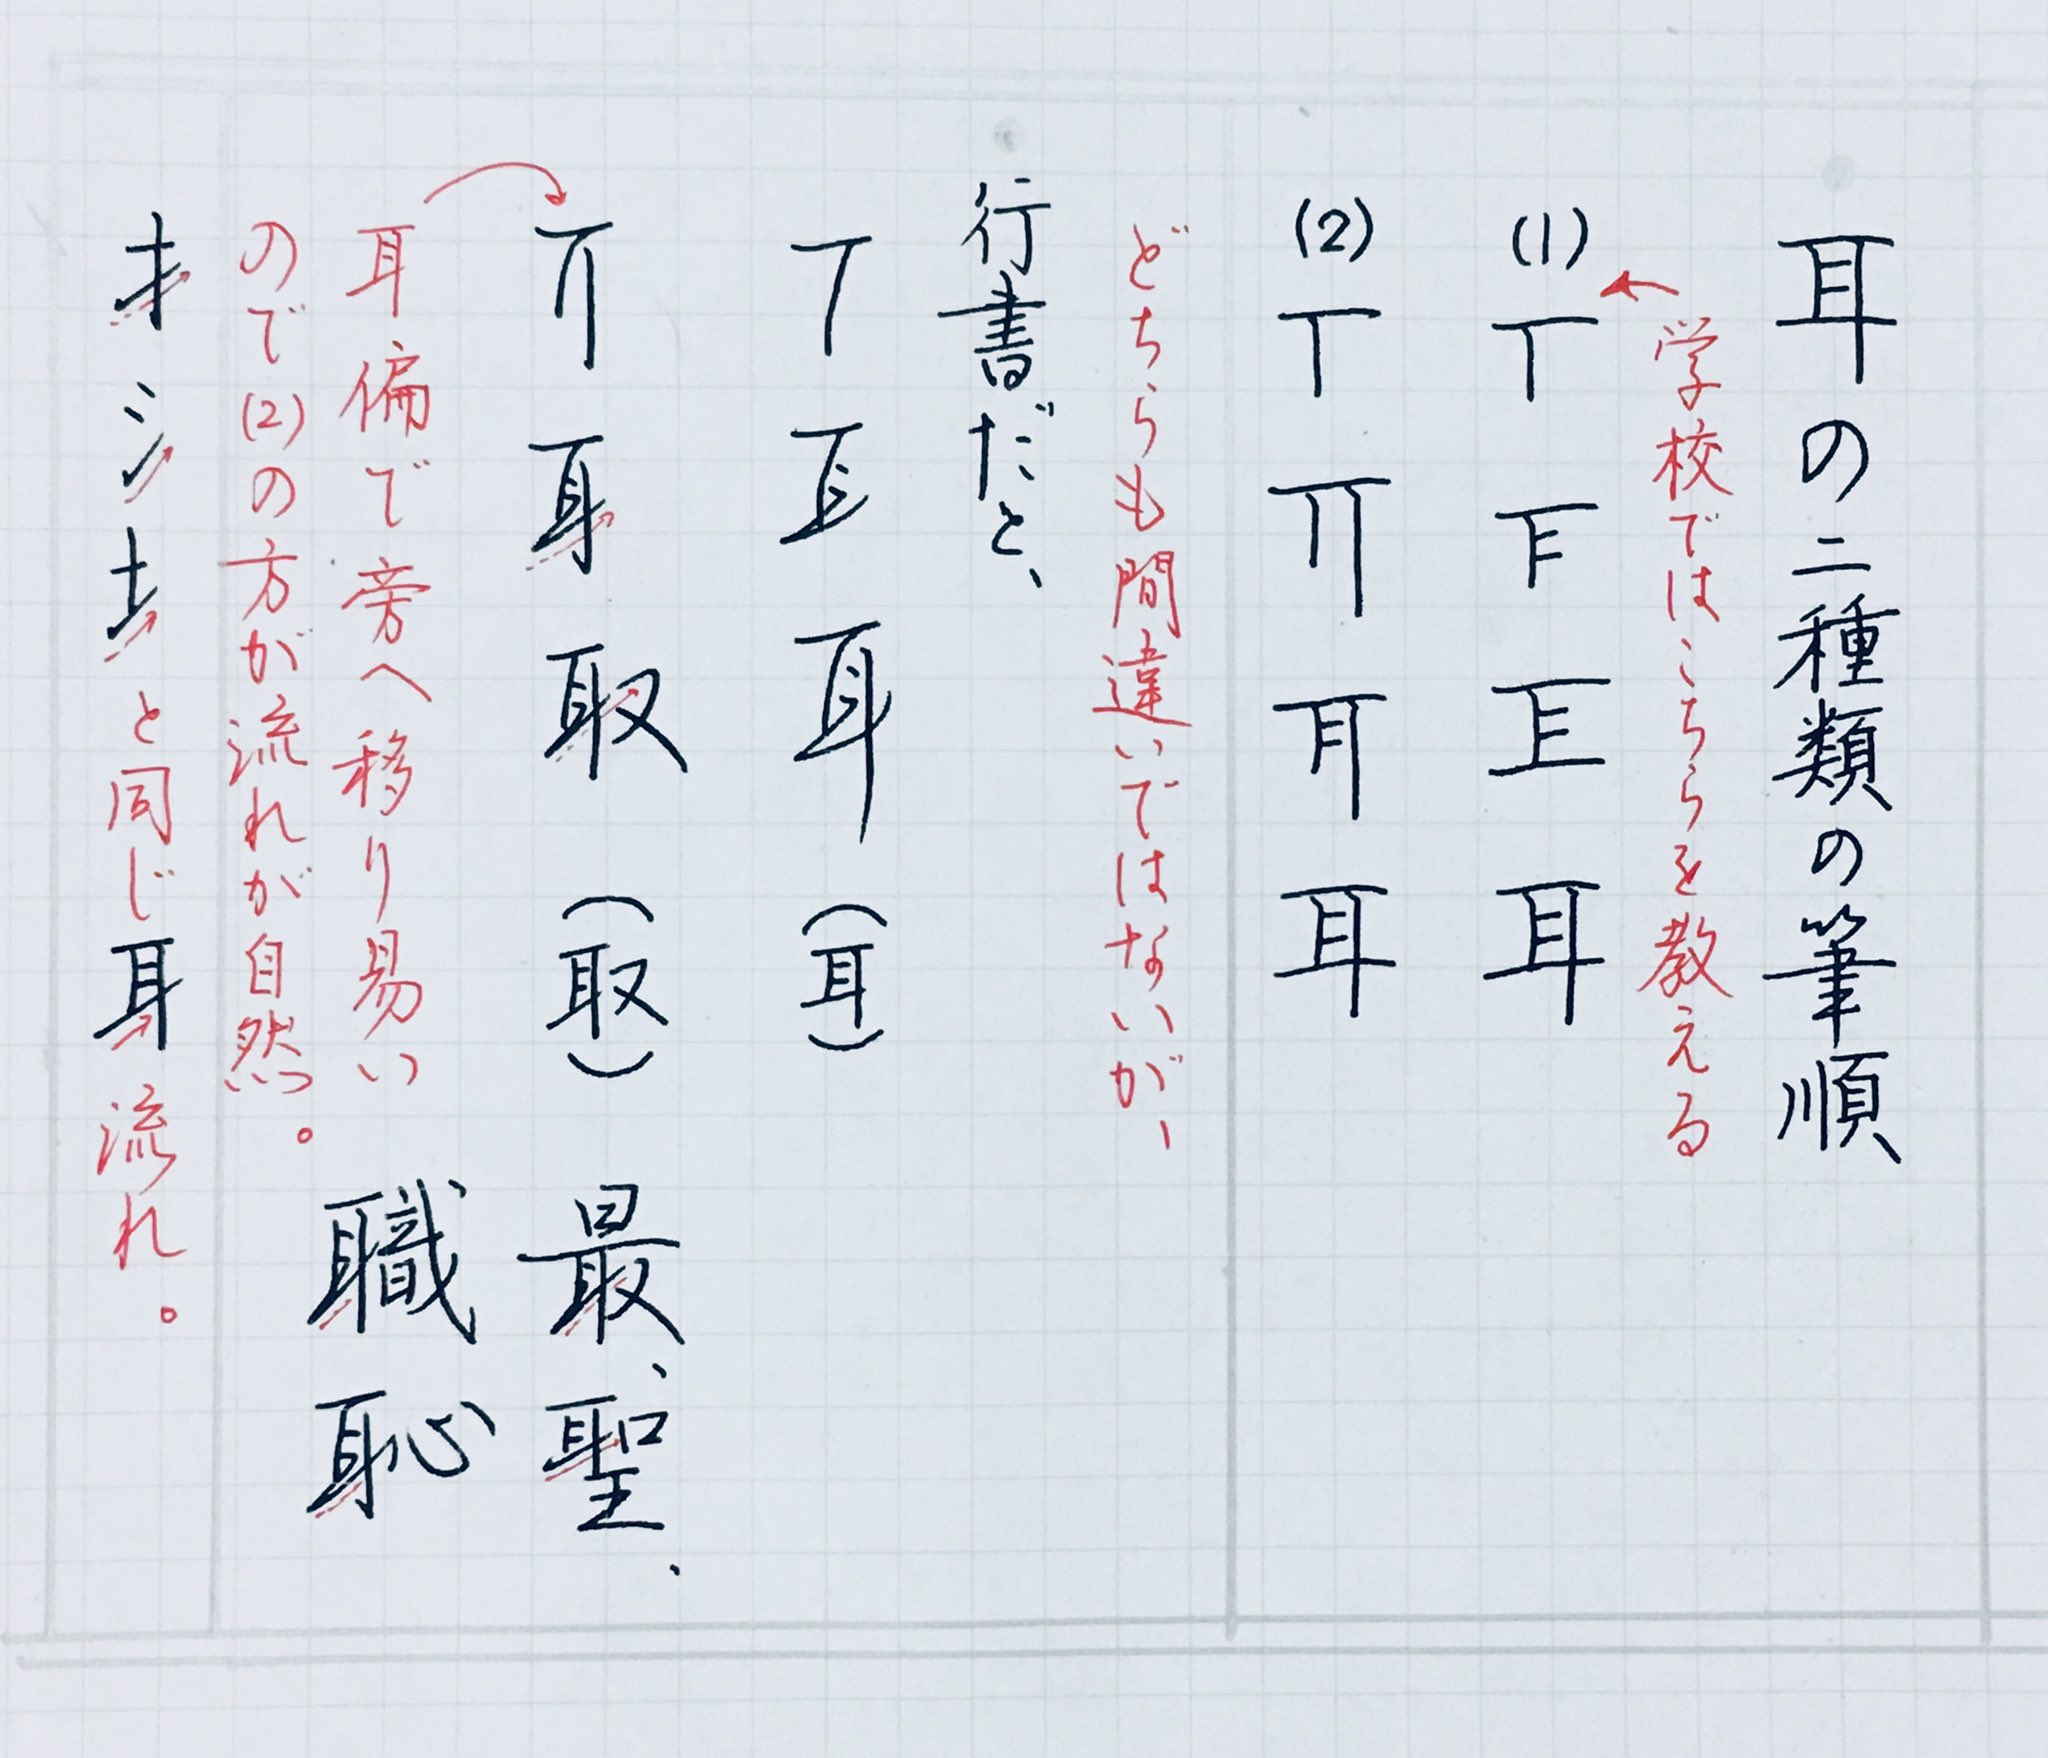 鈴木栖鳥 学校では漢字１つに1つしか筆順を教えないけど 実際には 1 １つしかないもの 川 山など 2 2通り以上あるもの 耳 必 馬 上など 3 行書や草書になると別の筆順があるもの 書 千 年 など があるから 自分のと違う書き順が間違いでは